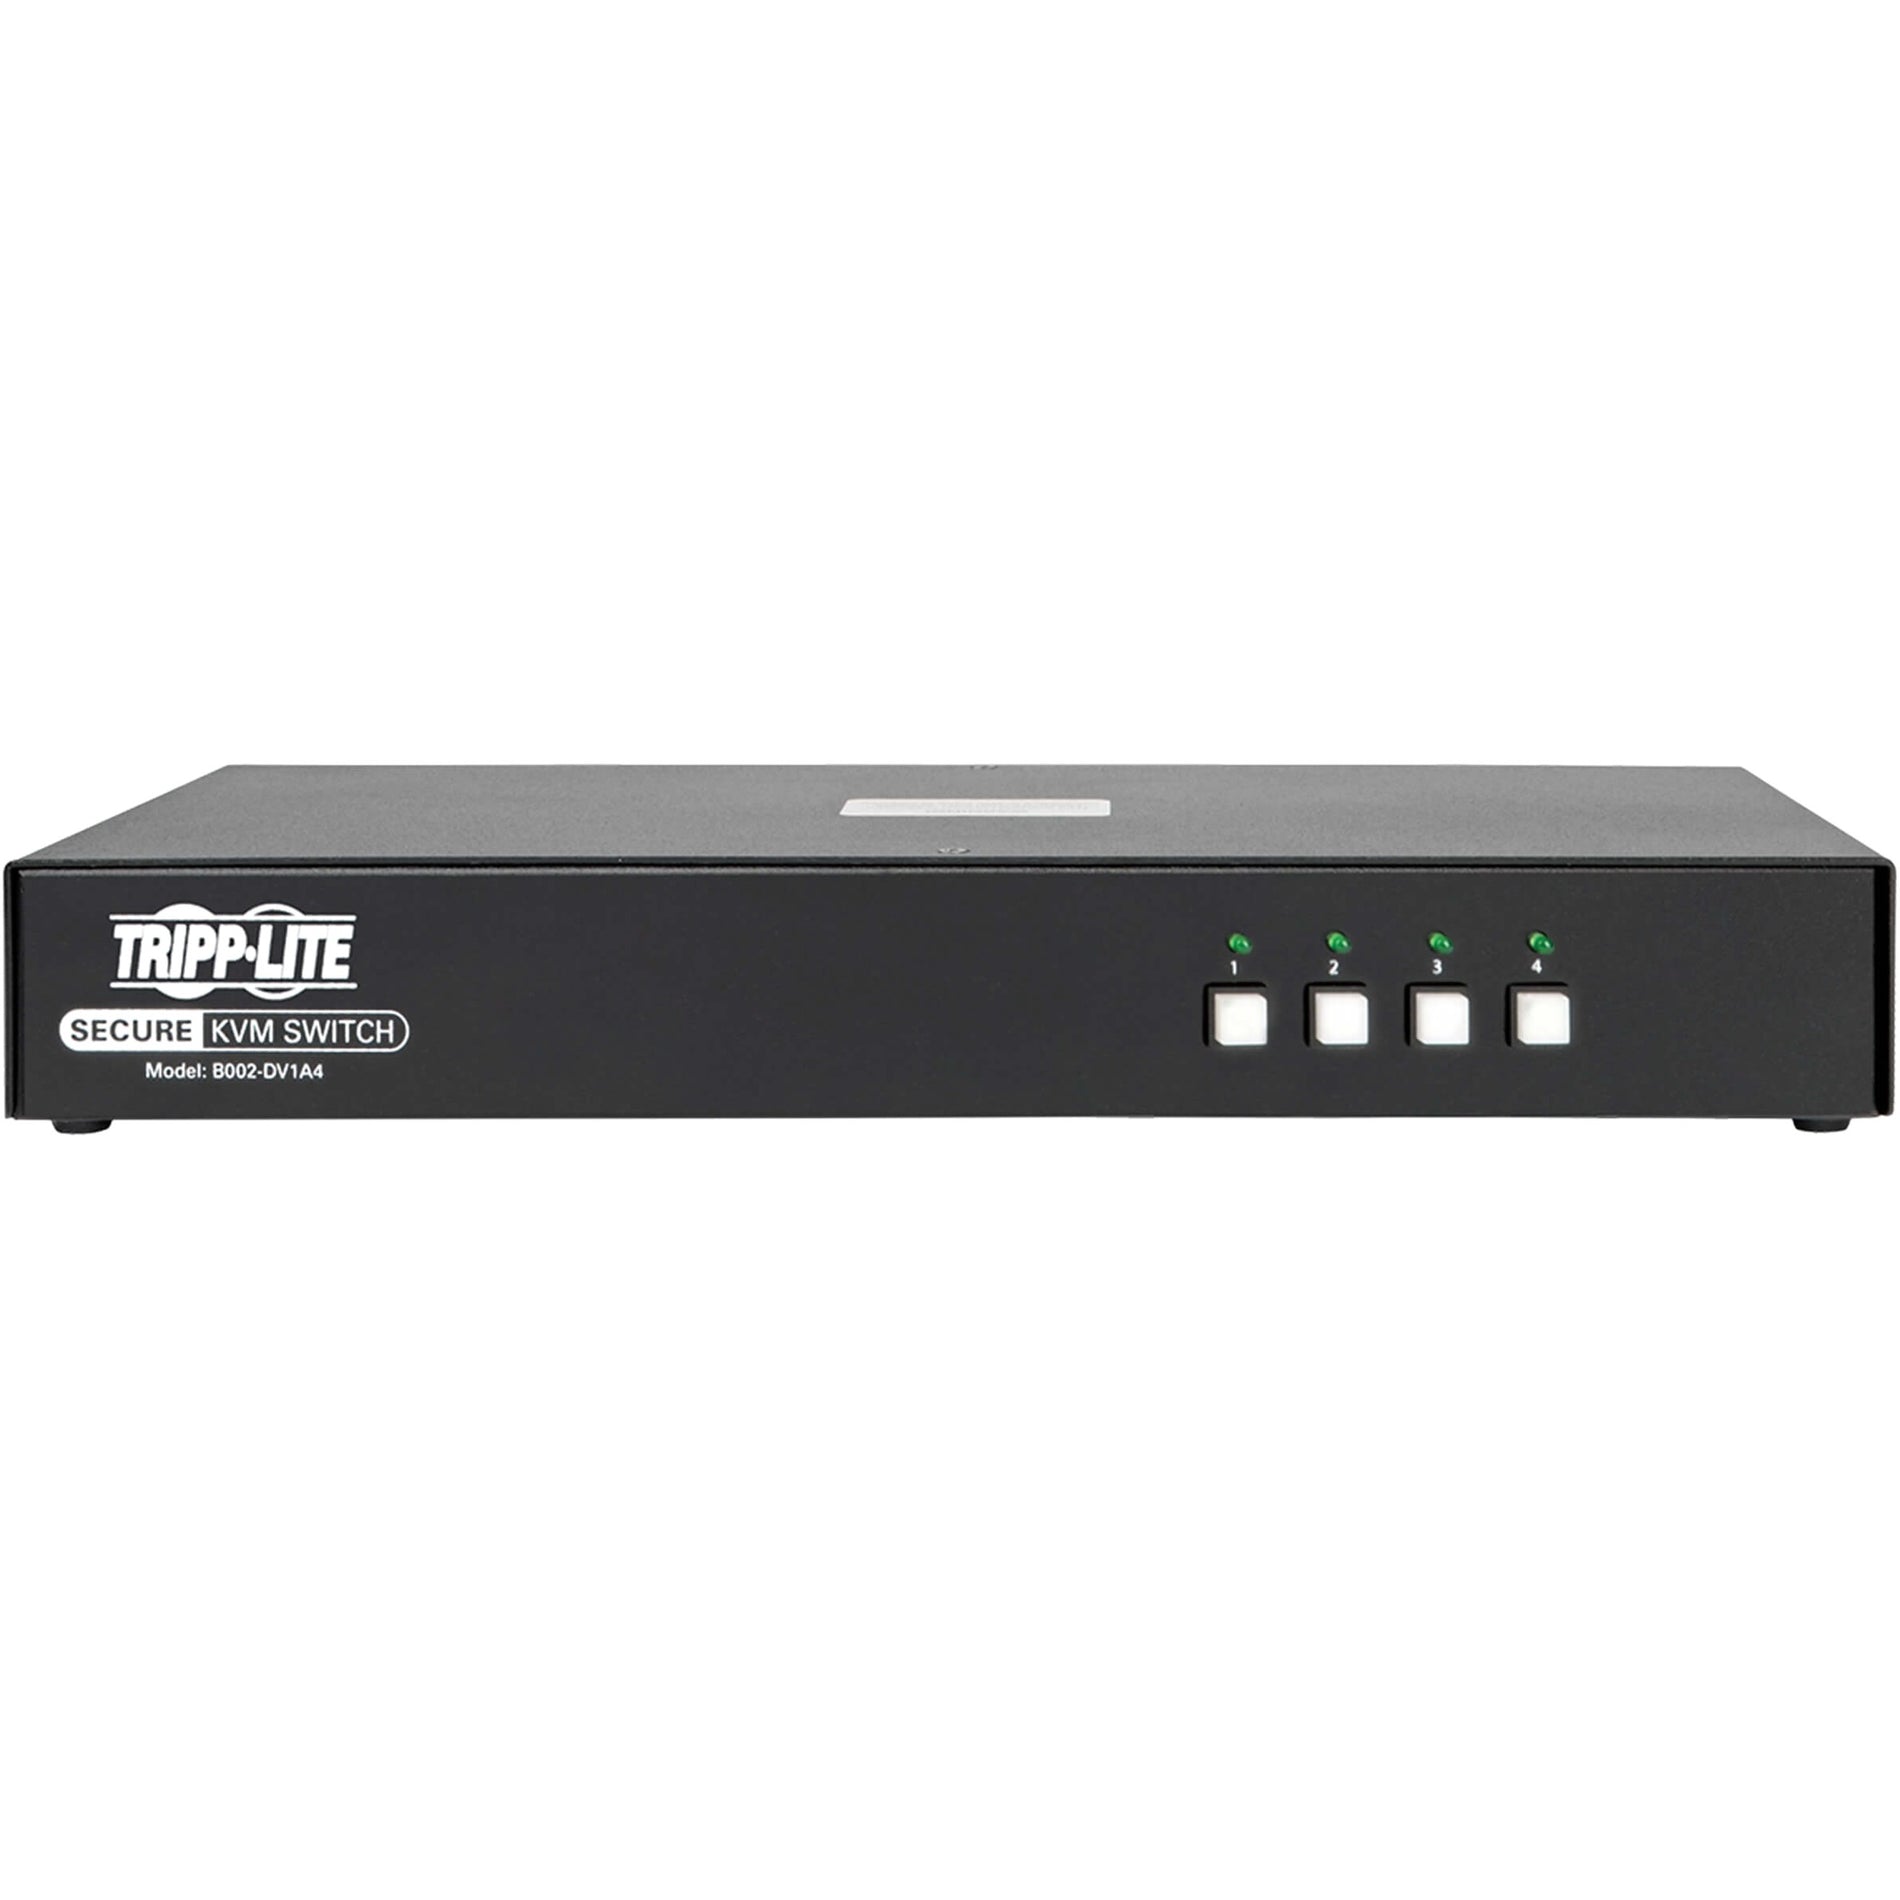 Tripp Lite B002-DV1A4 4-Port NIAP PP3.0-Certified DVI-I KVM Switch Maximum Video Resolution 2560 x 1600 3 Year Warranty Tripp Lite B002-DV1A4 4-Port KVM Switch DVI-I certifié NIAP PP3.0 résolution vidéo maximale de 2560 x 1600 garantie de 3 ans